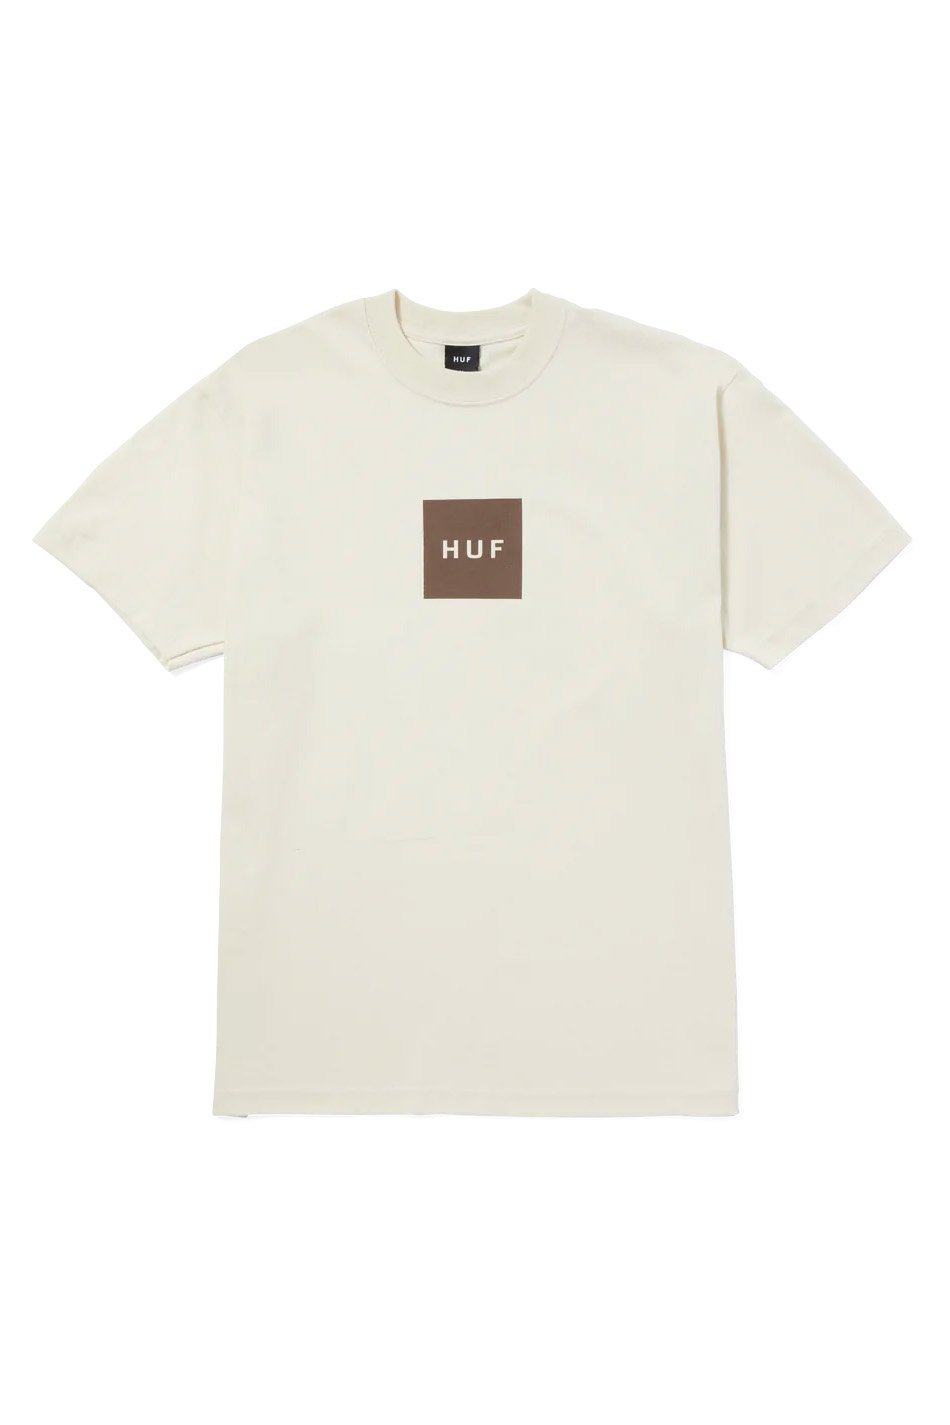 Tee-shirt Huf Set Box Bone